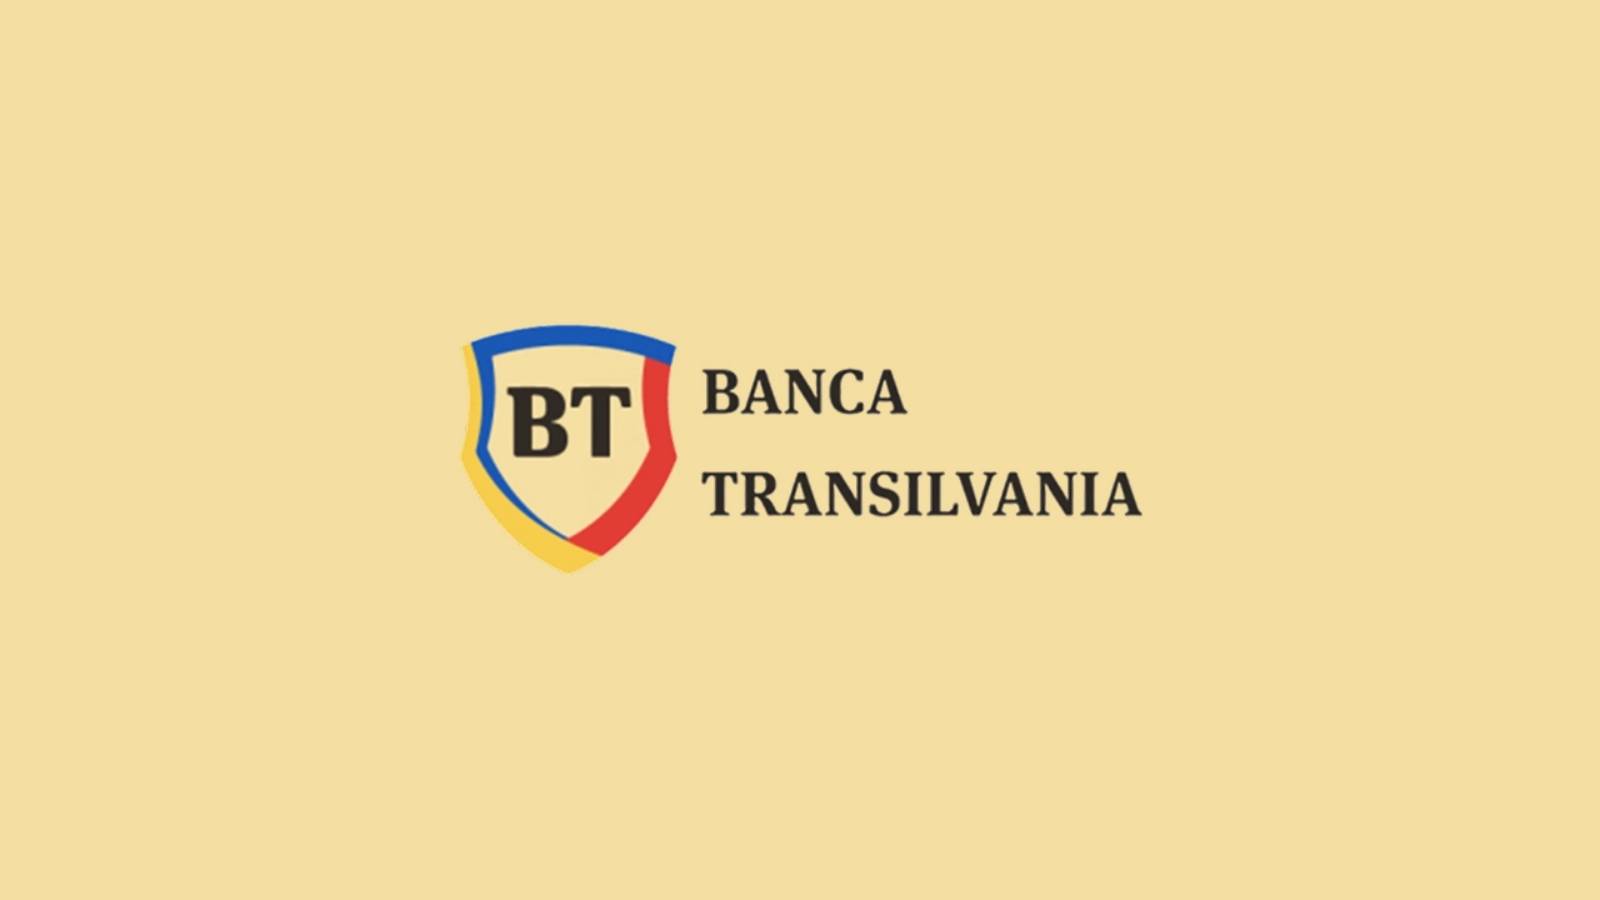 Oficjalna niespodzianka BANCA Transilvania LAST MINUTE GRATIS dla klientów rumuńskich